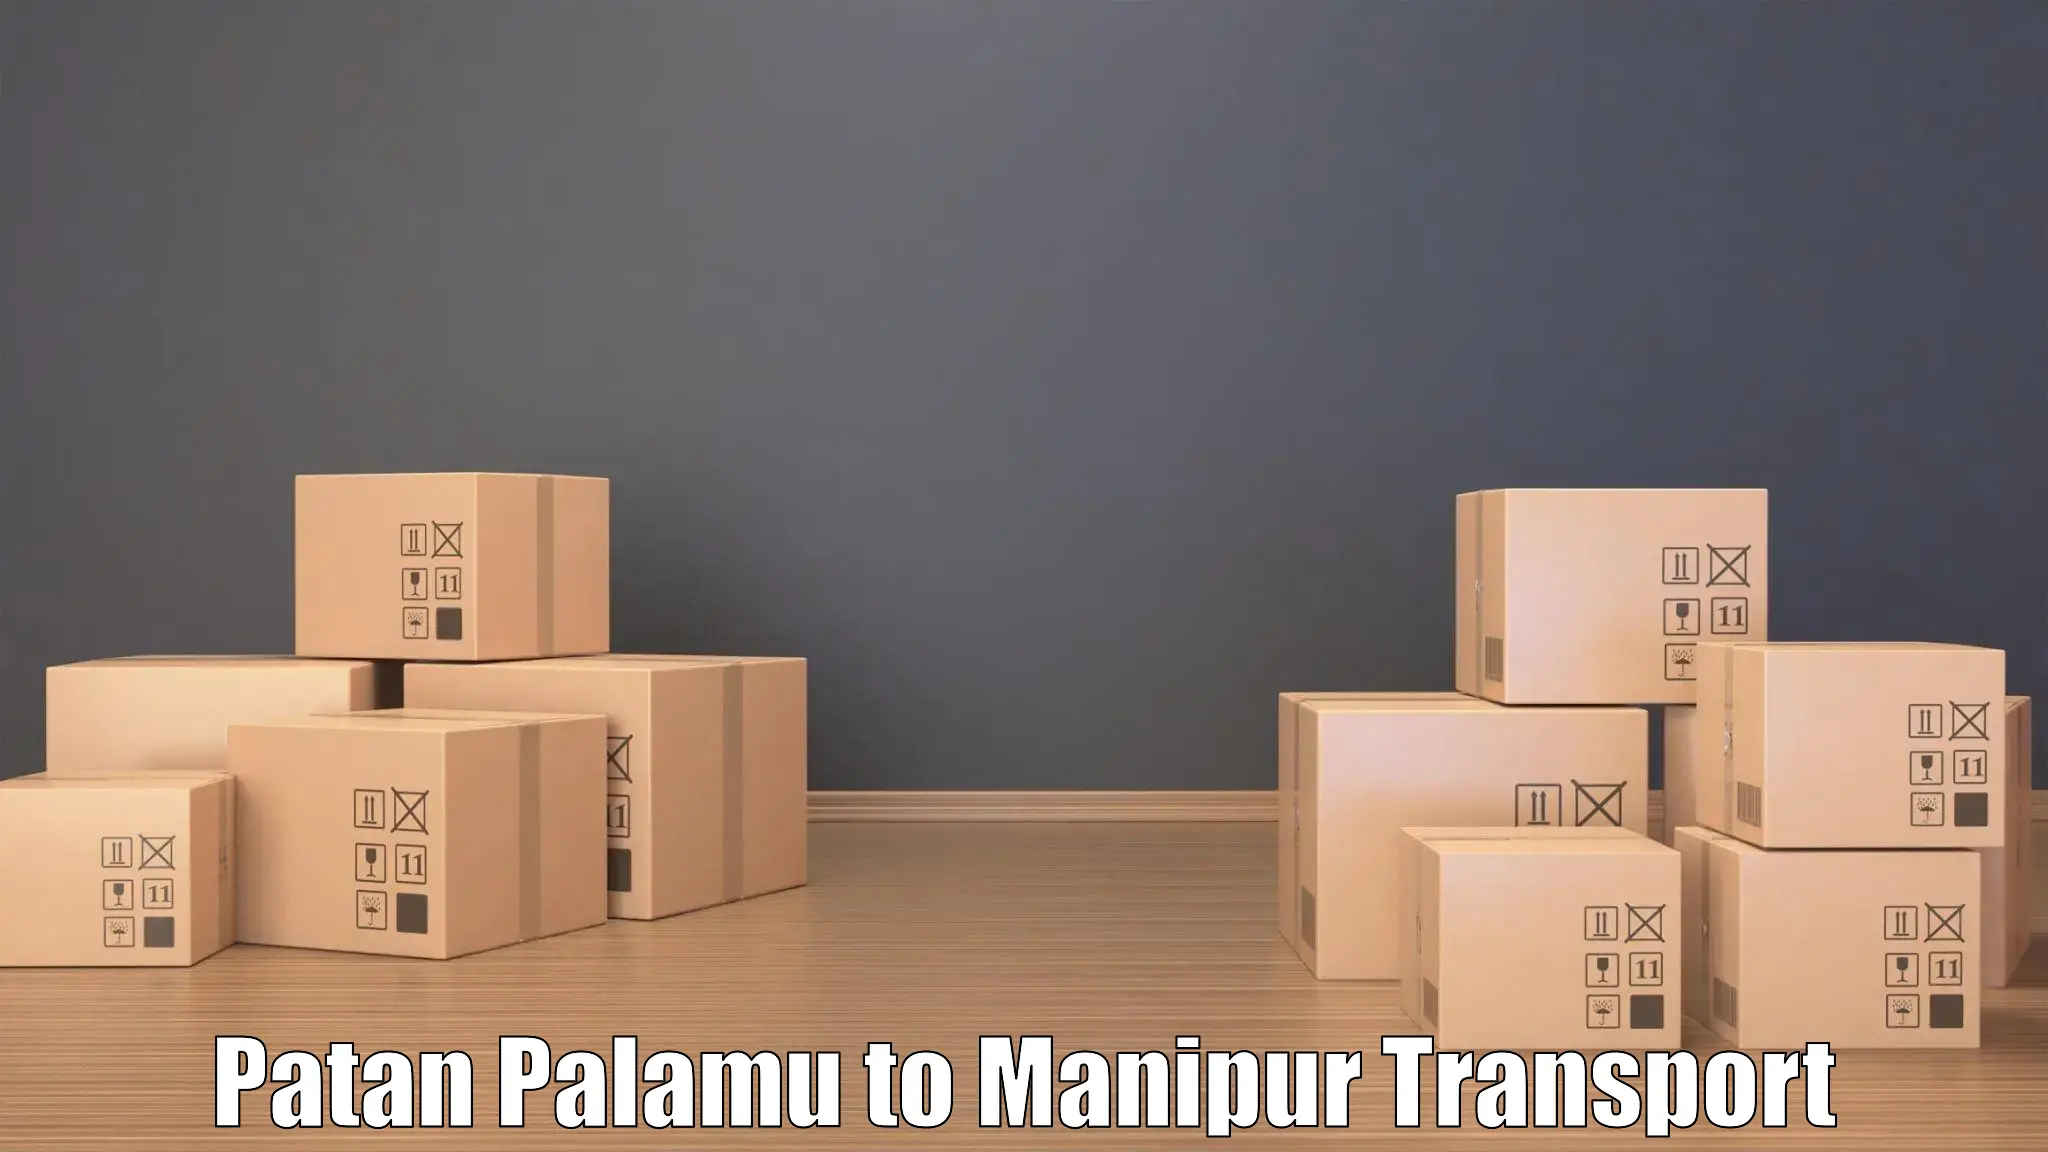 Transport in sharing Patan Palamu to Thoubal